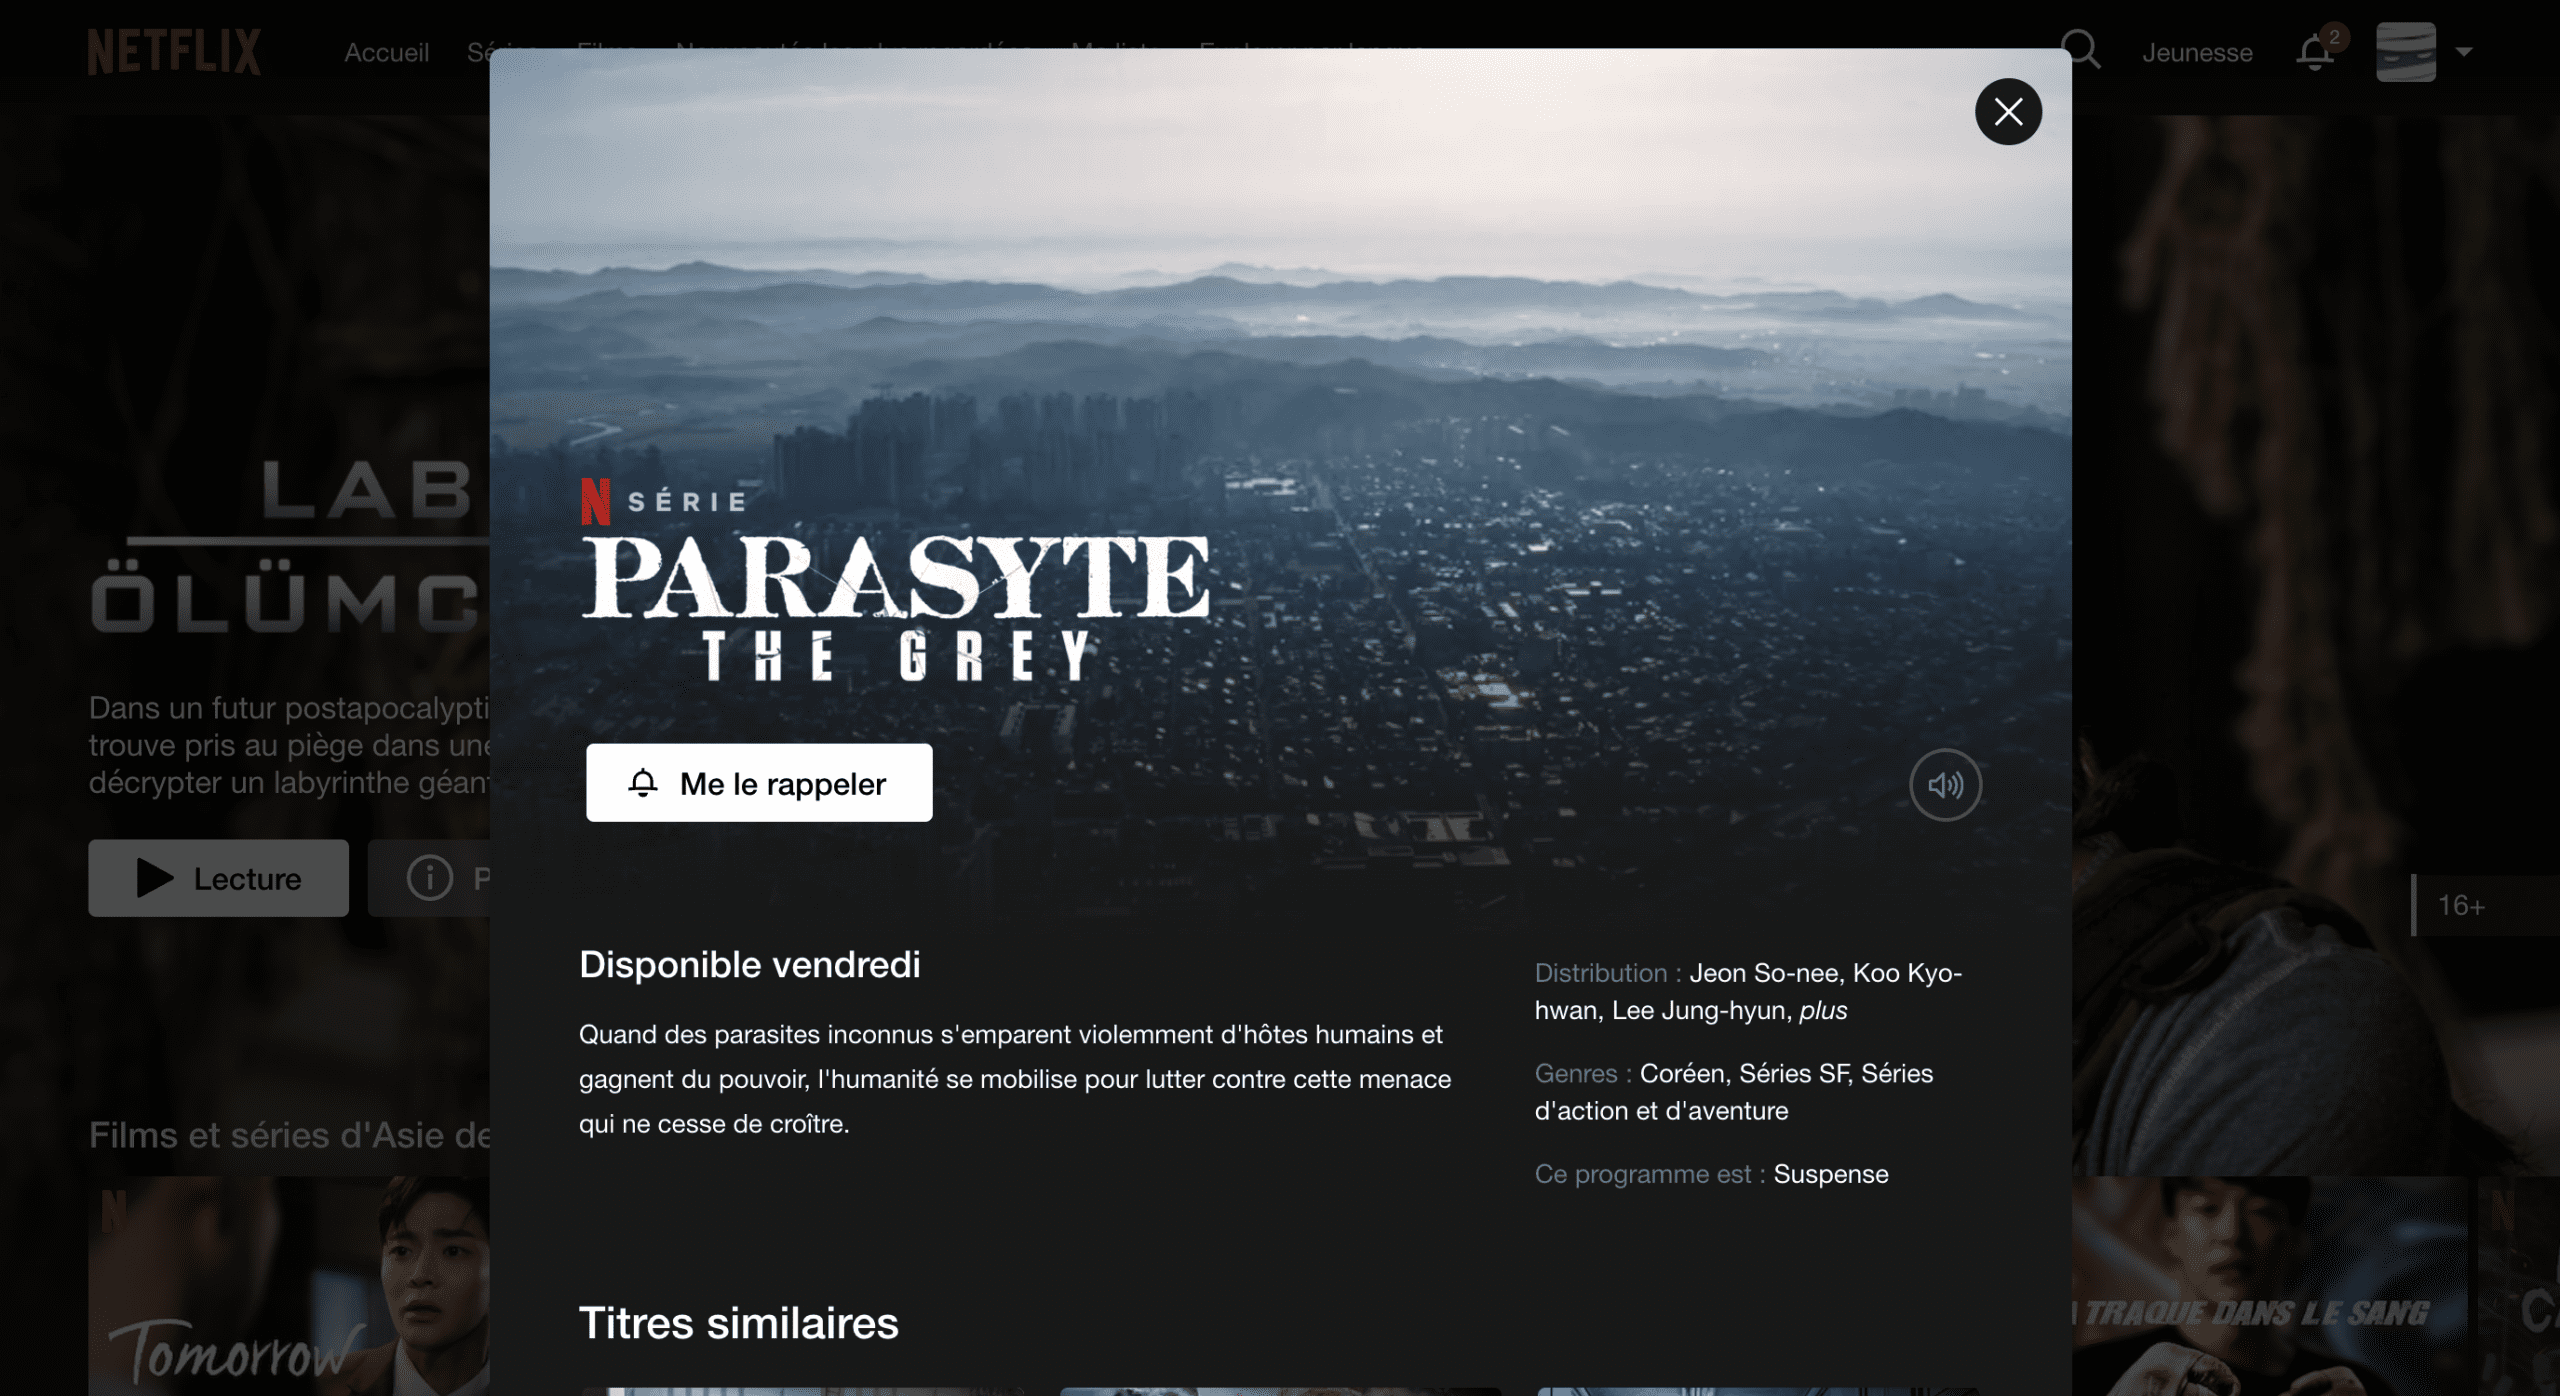 Parasyte : The Grey - 5 avril